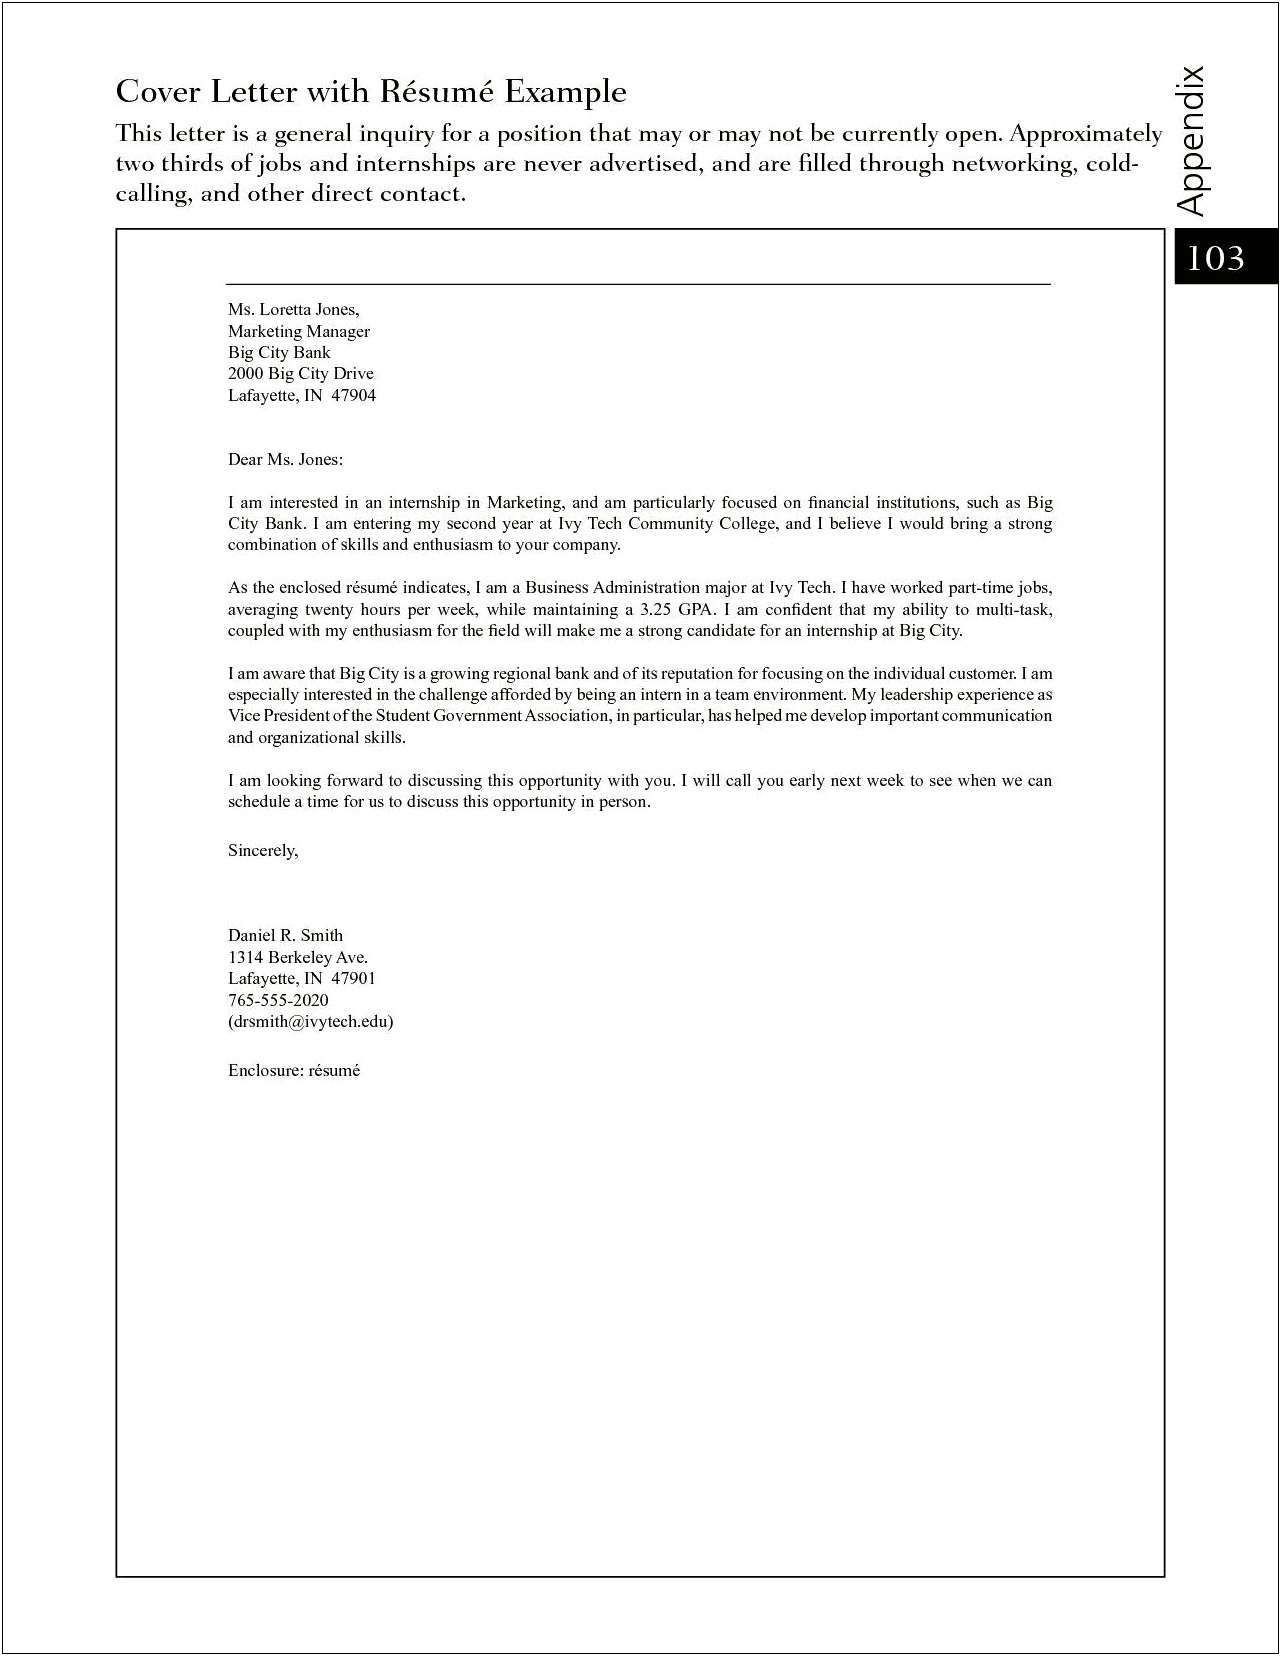 Usa Jobs Resume Cover Letter Sample